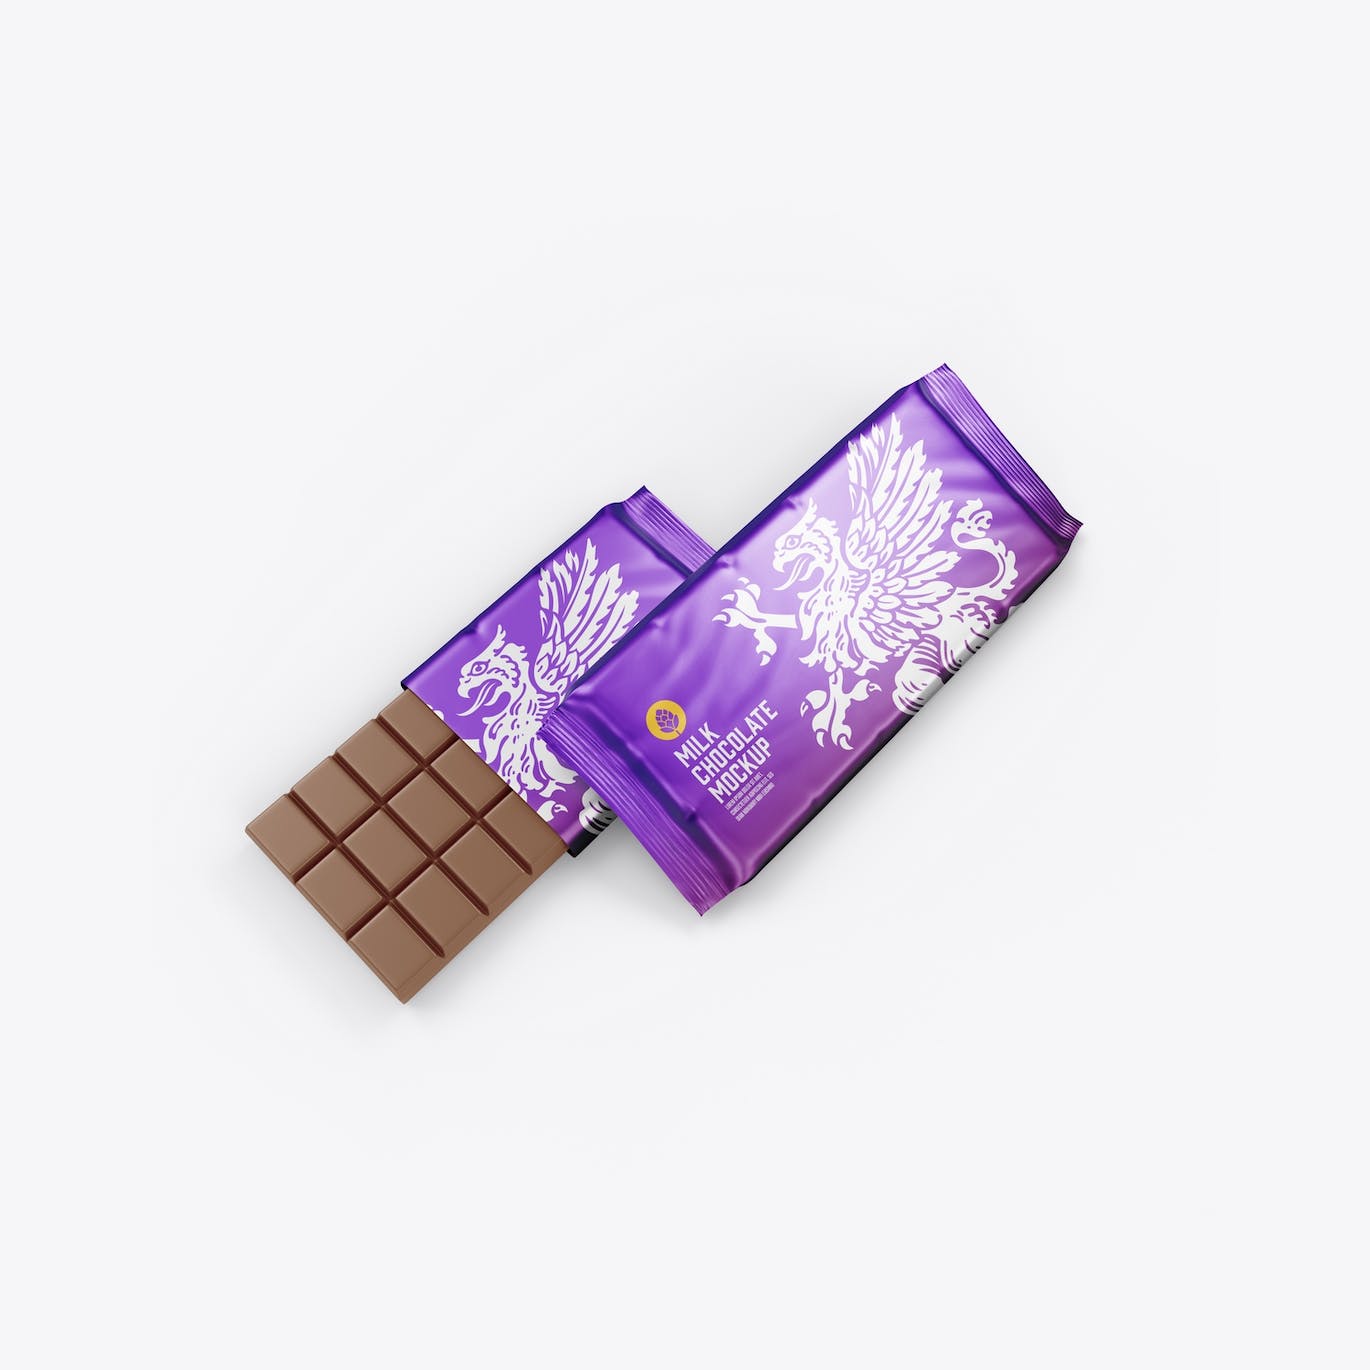 光亮的巧克力棒设计包装样机图 Set Glossy Chocolate Bar Mockup 样机素材 第12张